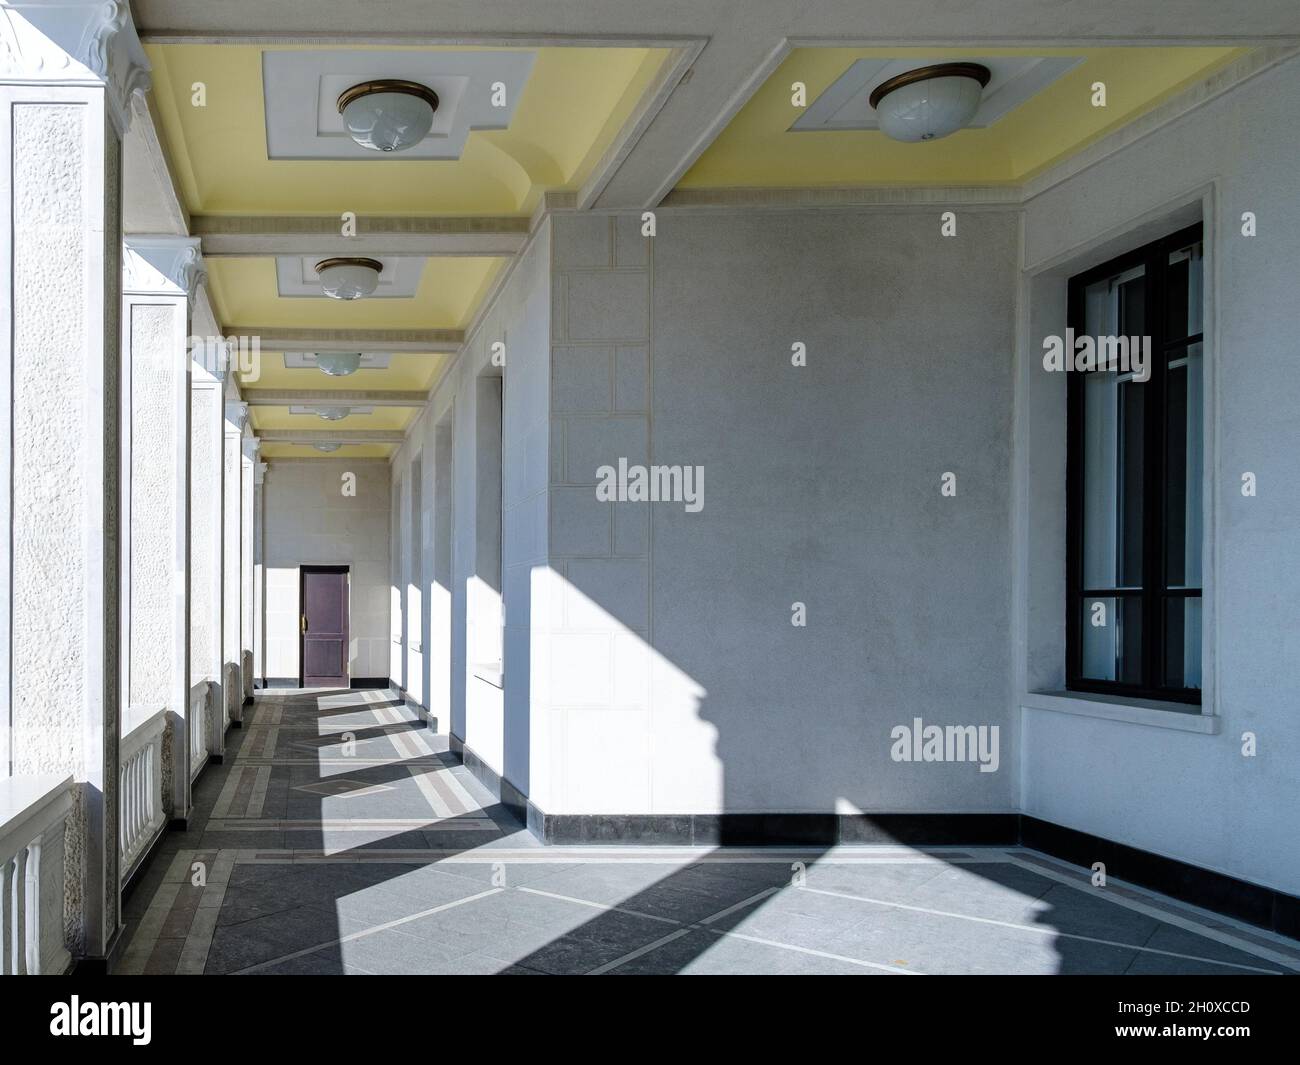 Vista delle colonne della galleria in un edificio sconosciuto. La luce solare brillante attraverso le colonne crea un motivo geometrico di luce e ombra sul pavimento e sulle pareti. Foto Stock